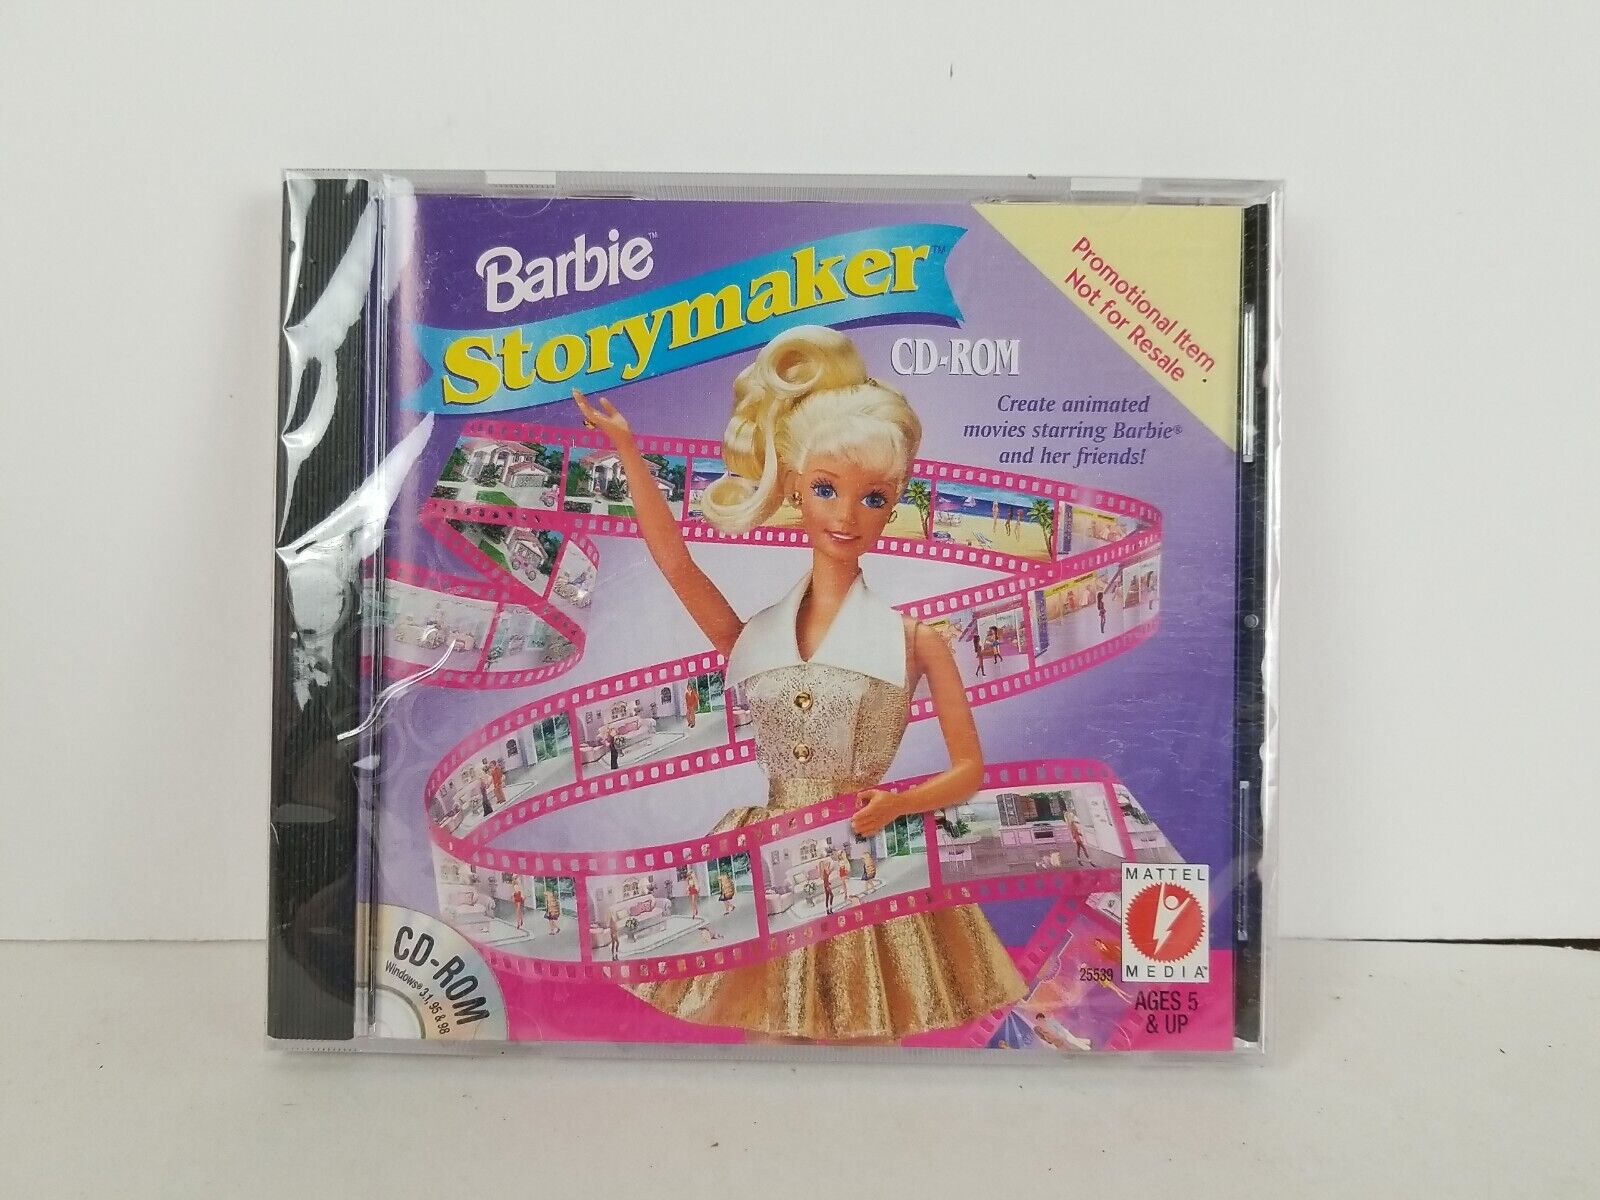 VTG 1999 NEW Barbie Storymaker Mattel Media CD-ROM Windows Software Game